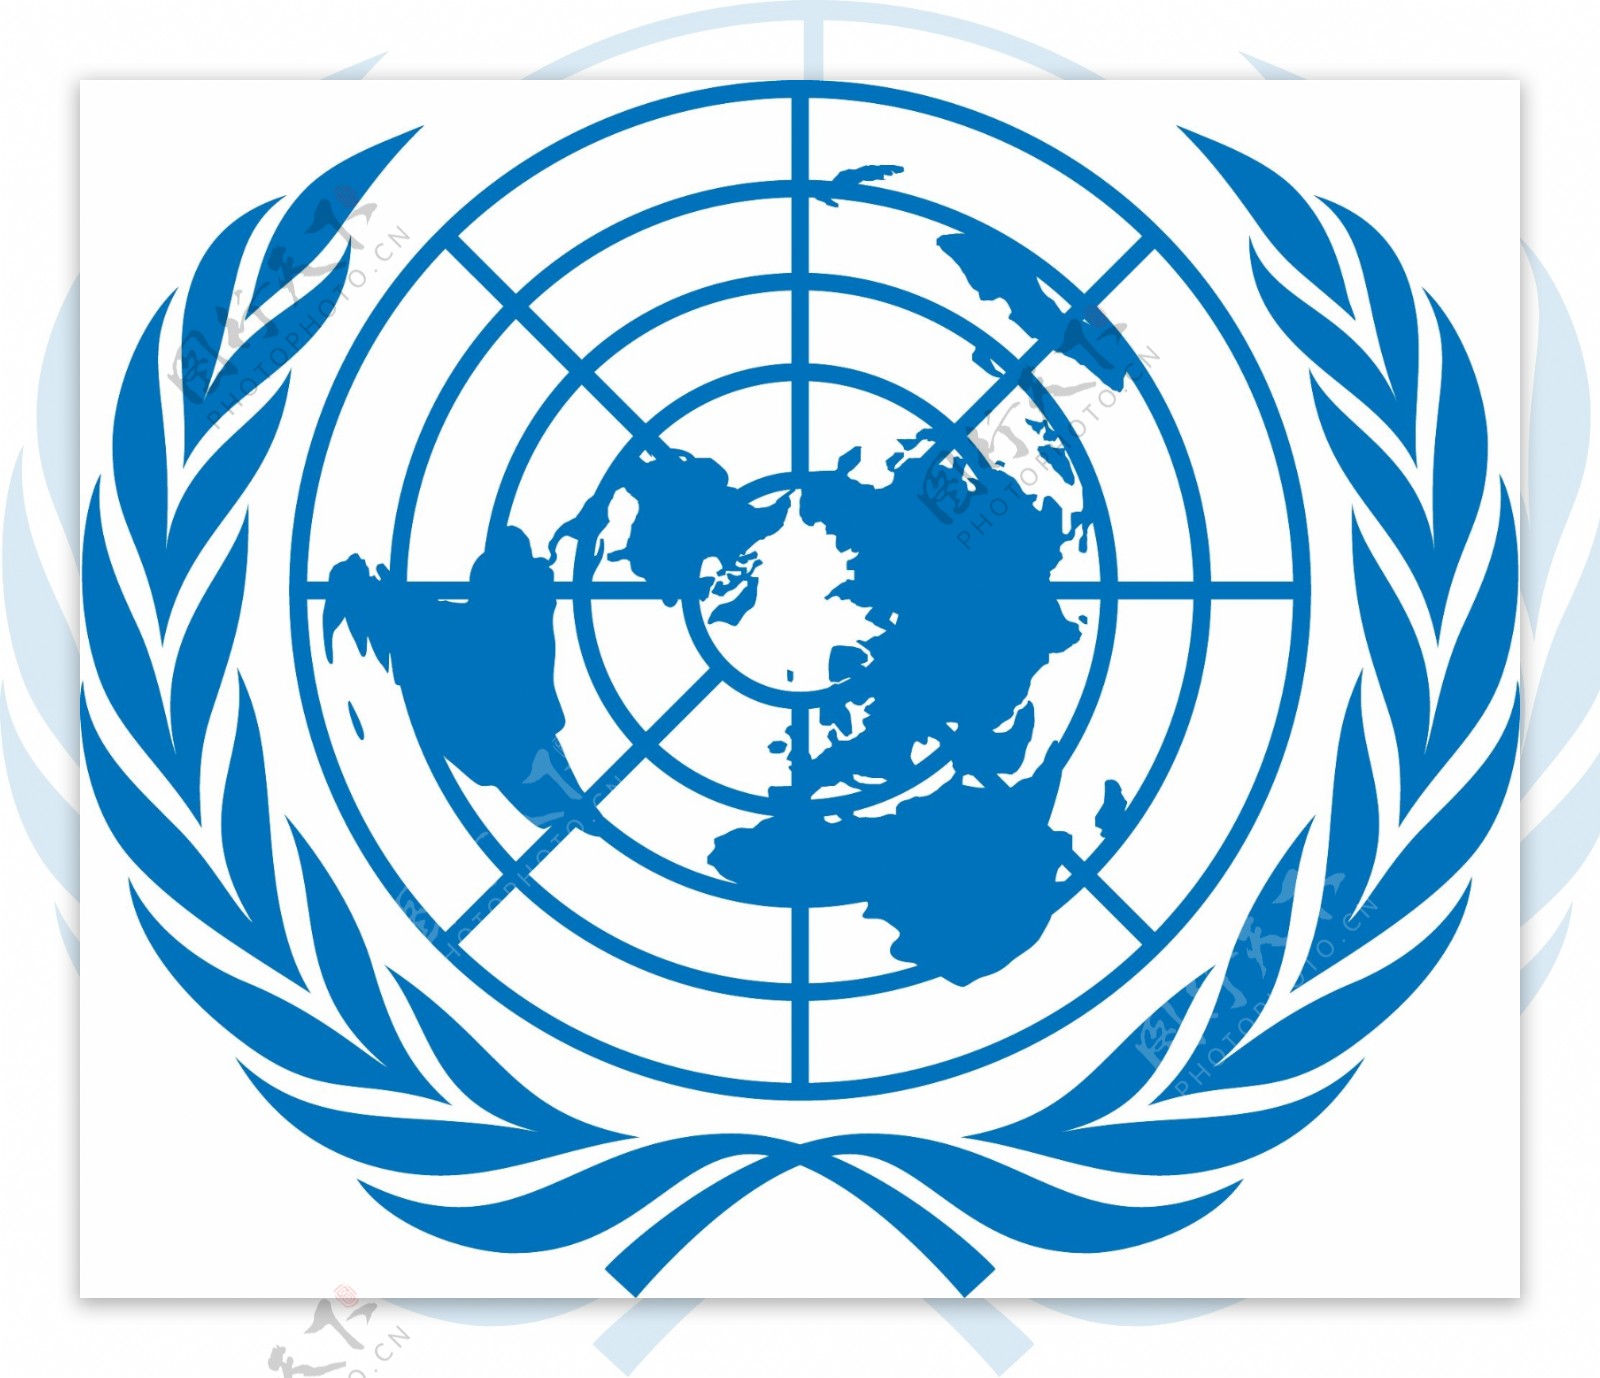 联合国徽章矢量素材